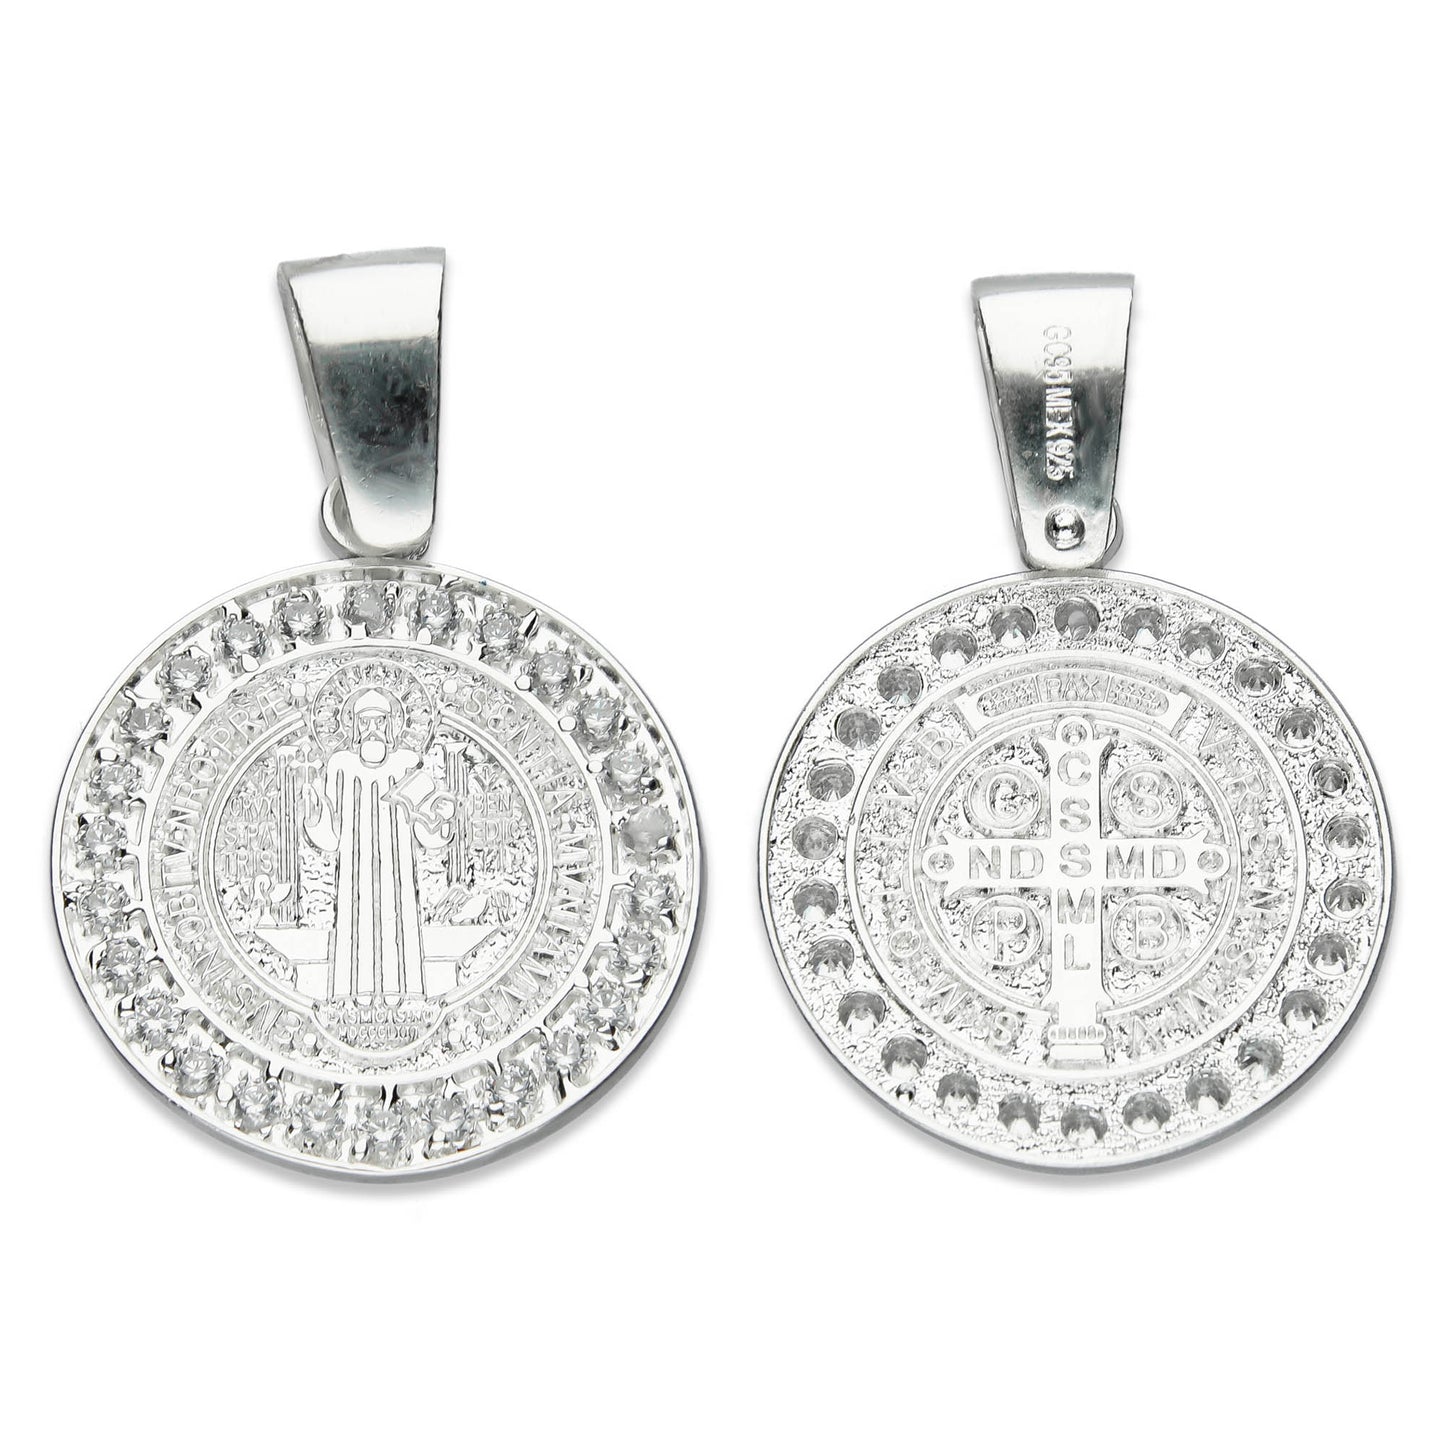 LPDJ199 Medalla San Benito 2.4 cm con Zirconias En Plata .925 2587792534